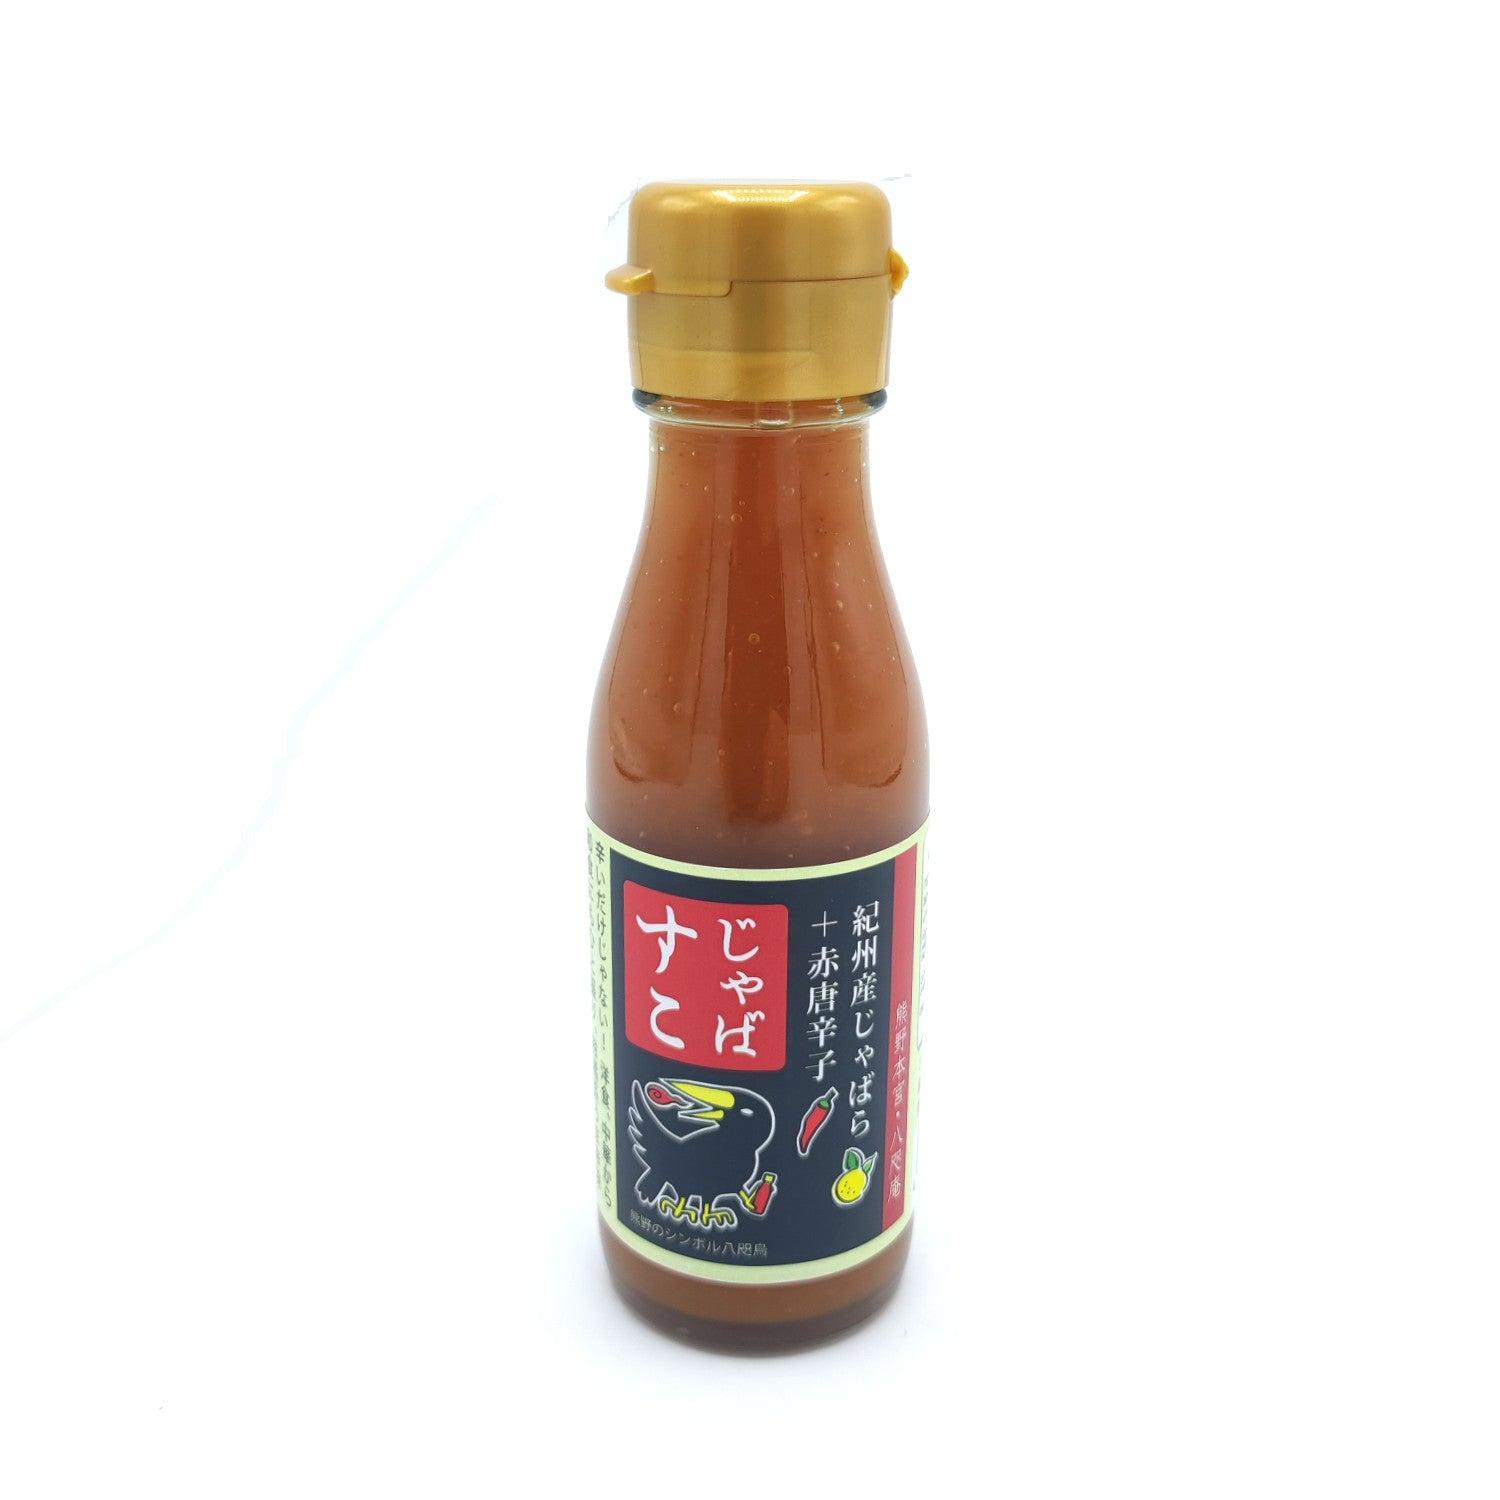 Jabasco Chilli Sauce 110g